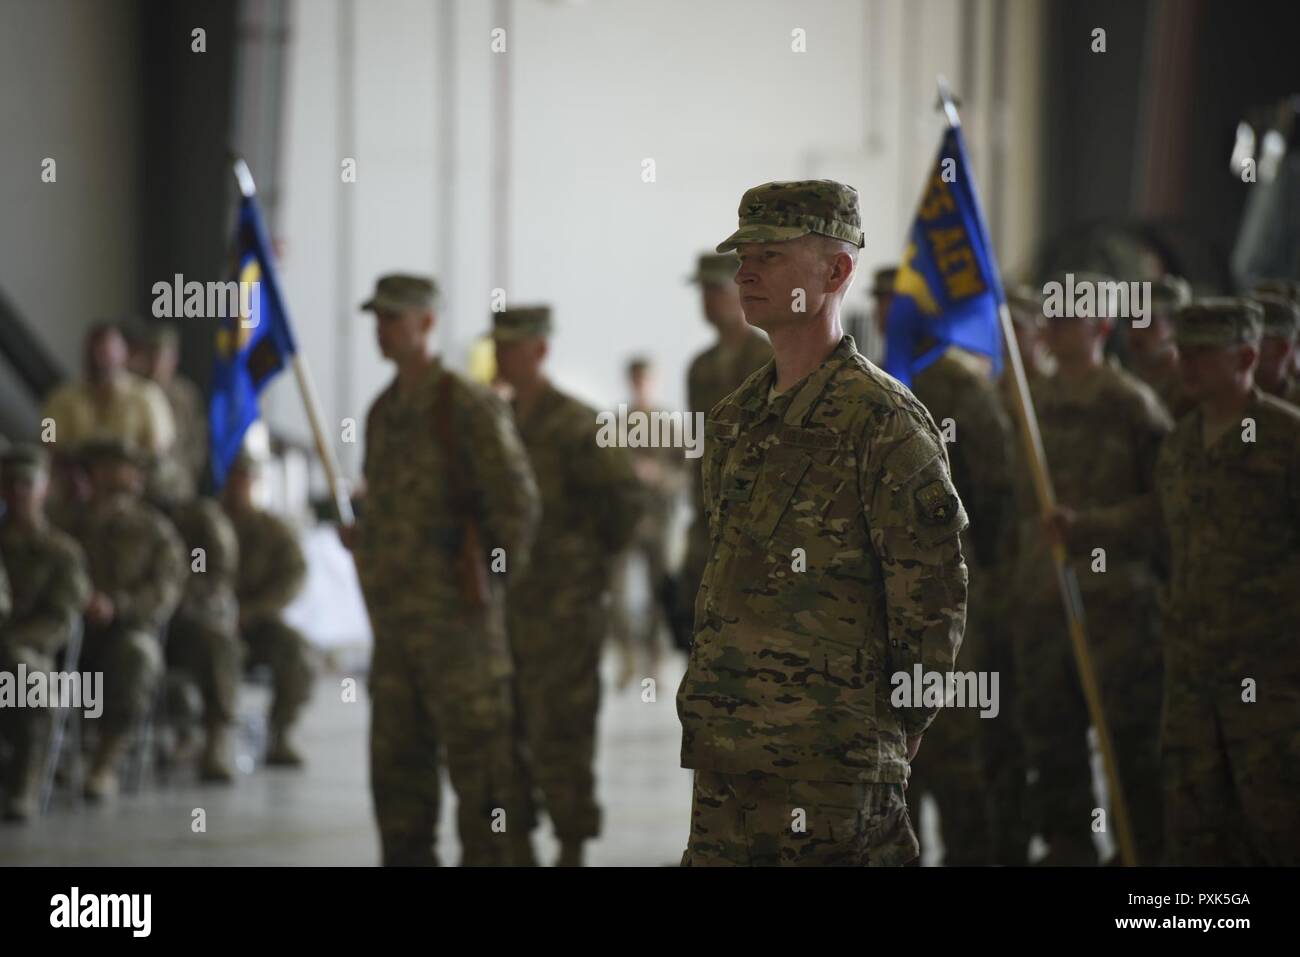 El Coronel William Burks, el 455a ala expedicionaria aérea vice comandante, está en formación durante una ceremonia de cambio de mando en el aeródromo de Bagram, Afganistán, 3 de junio de 2017. Aeródromo de Bagram da la bienvenida al nuevo comandante, Brig. Gen. Craig Baker. Foto de stock